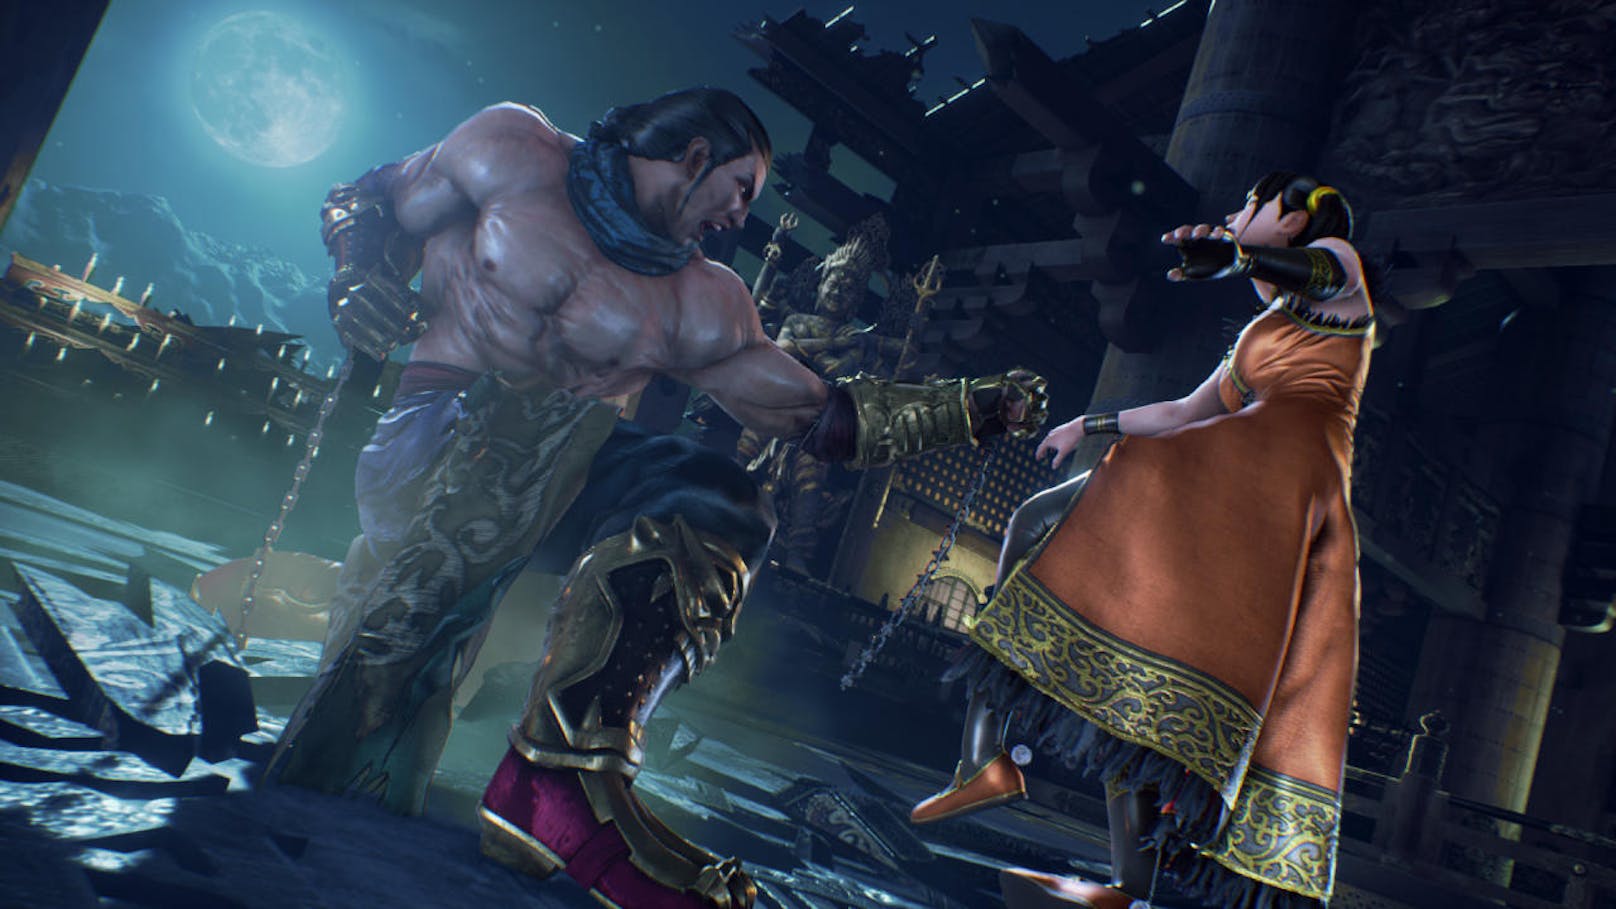 Beim Gameplay führt Tekken 7 zwei neue Mechaniken ein, die für mehr Taktik sorgen: Rage Arts und Power Crushs.